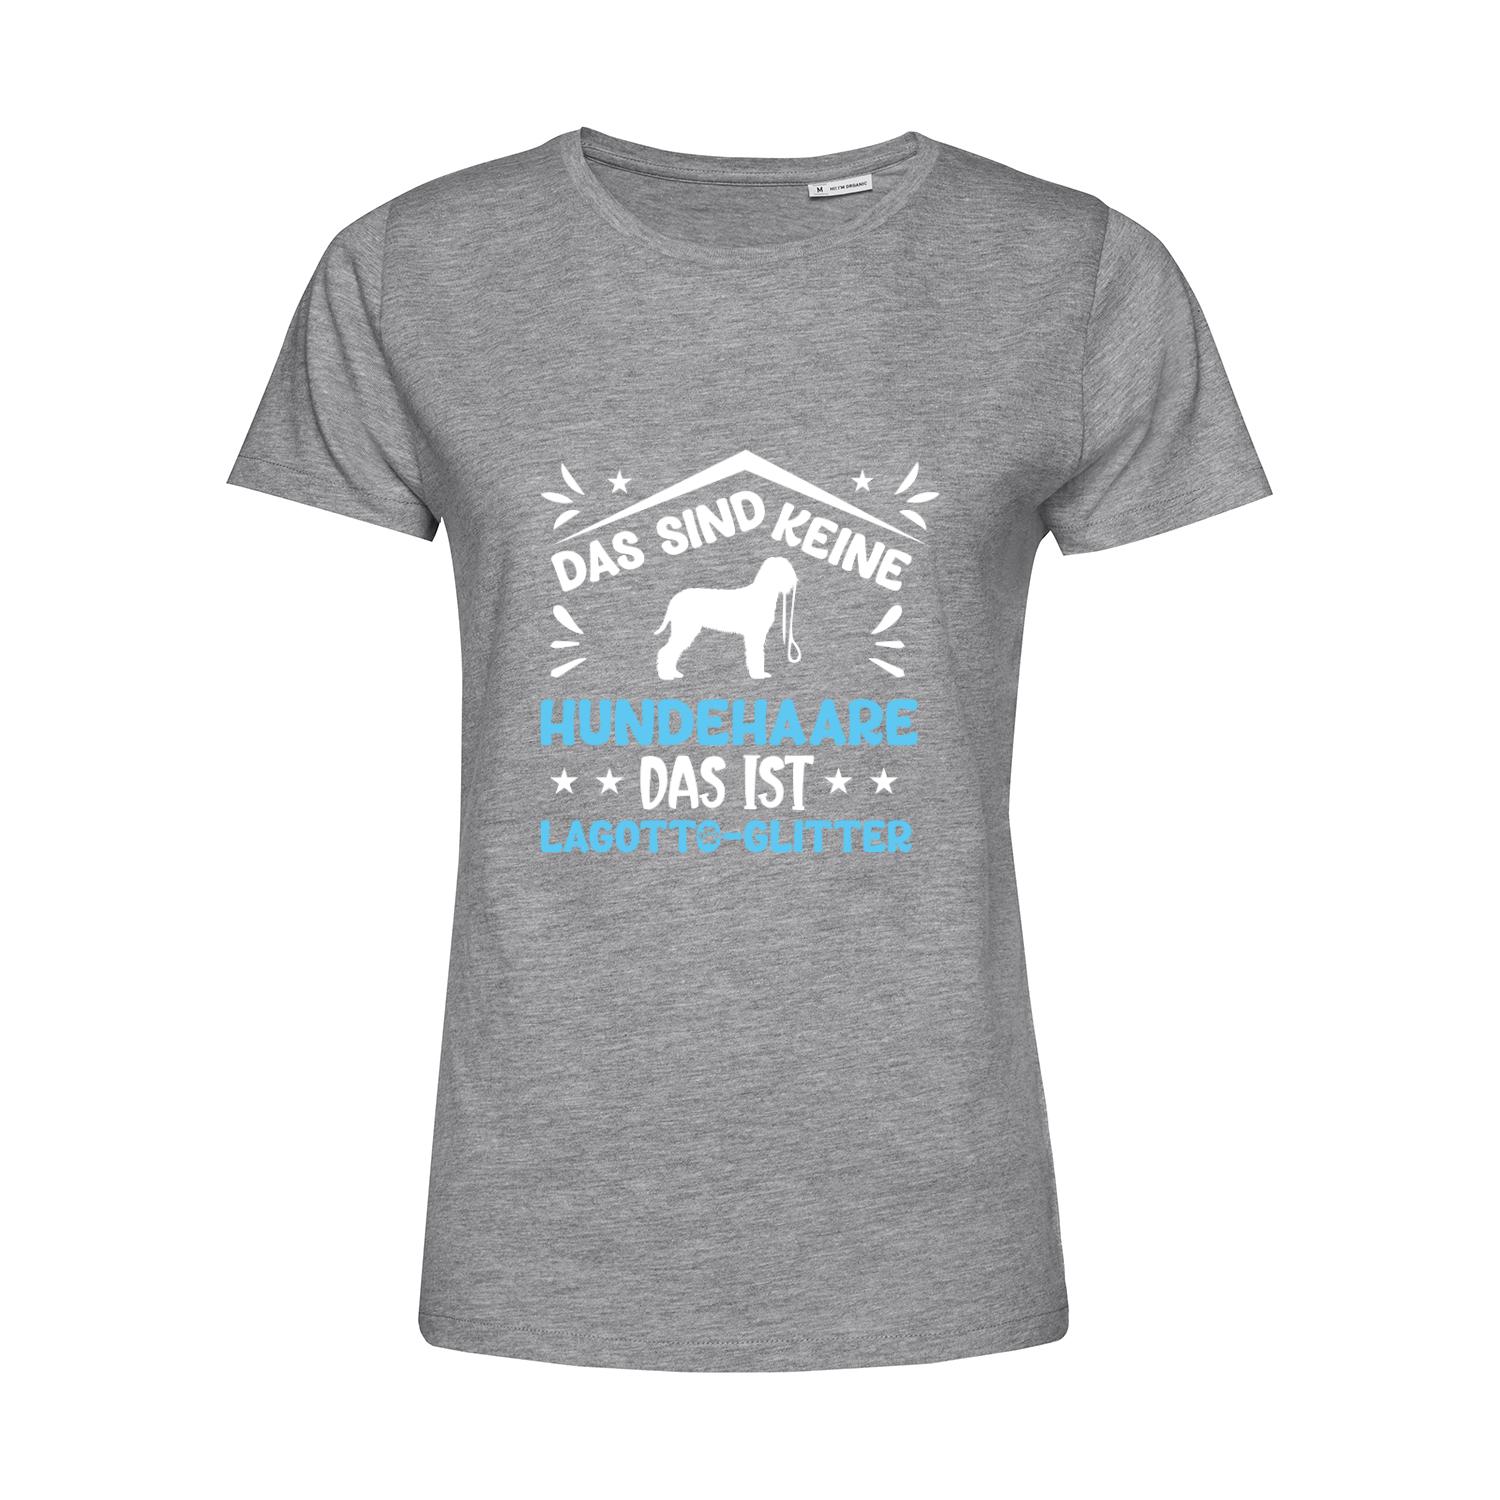 Nachhaltiges T-Shirt Damen Hunde - Keine Hundehaare Lagotto Glitter